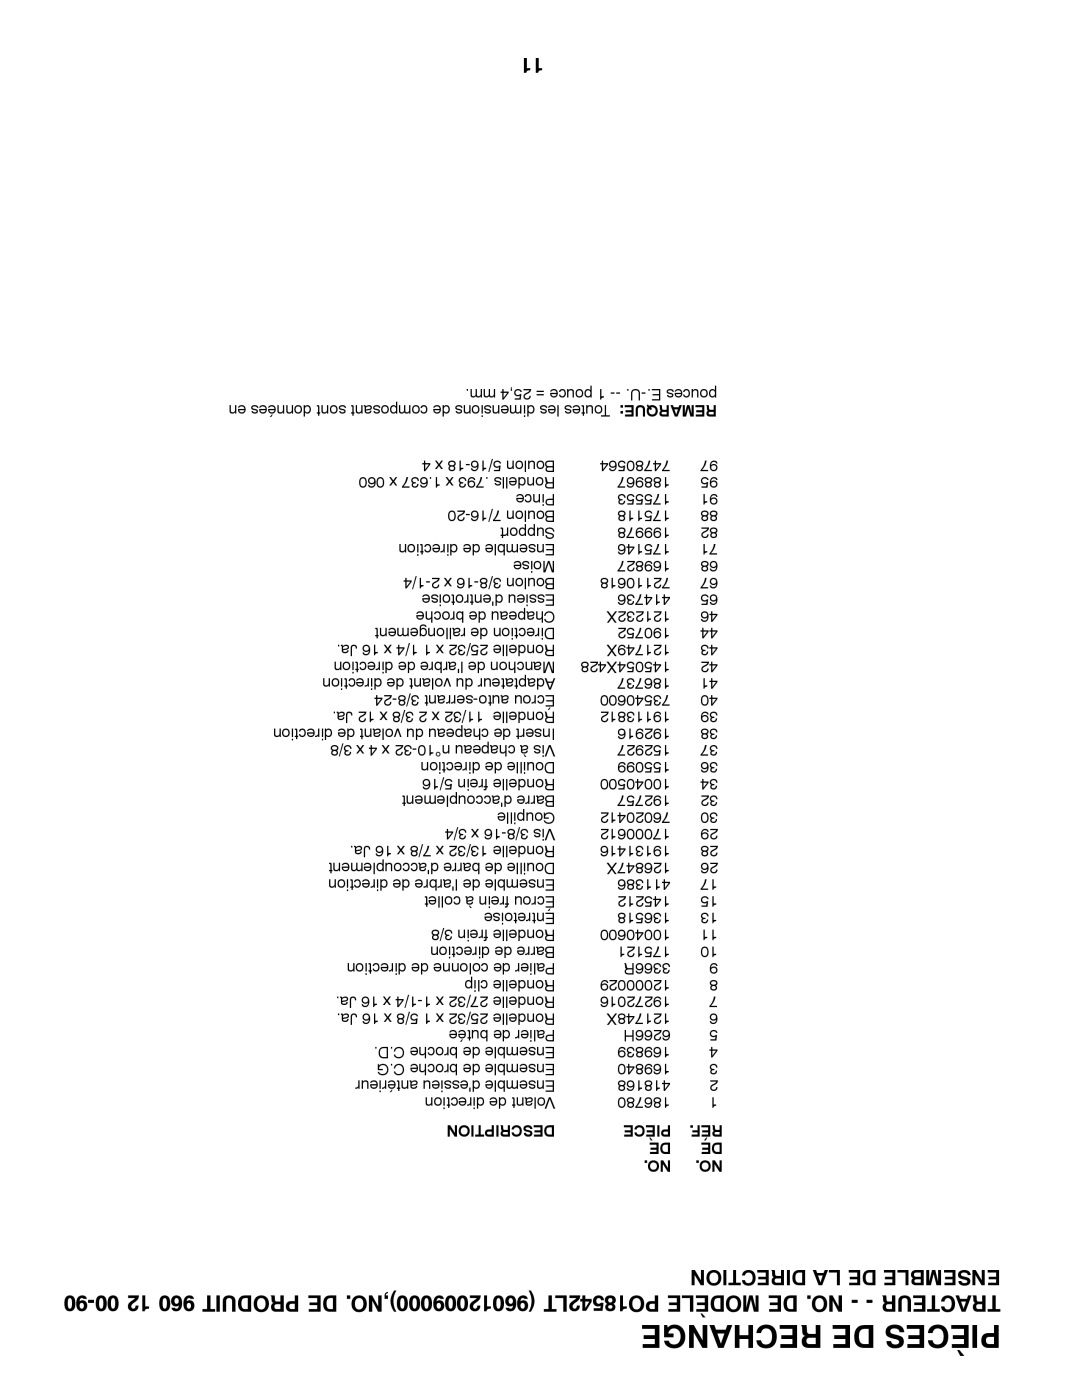 Poulan 960 12 00-90 manual Rechange De Pièces, Description, en données sont composant de dimensions les Toutes REMARQUE 